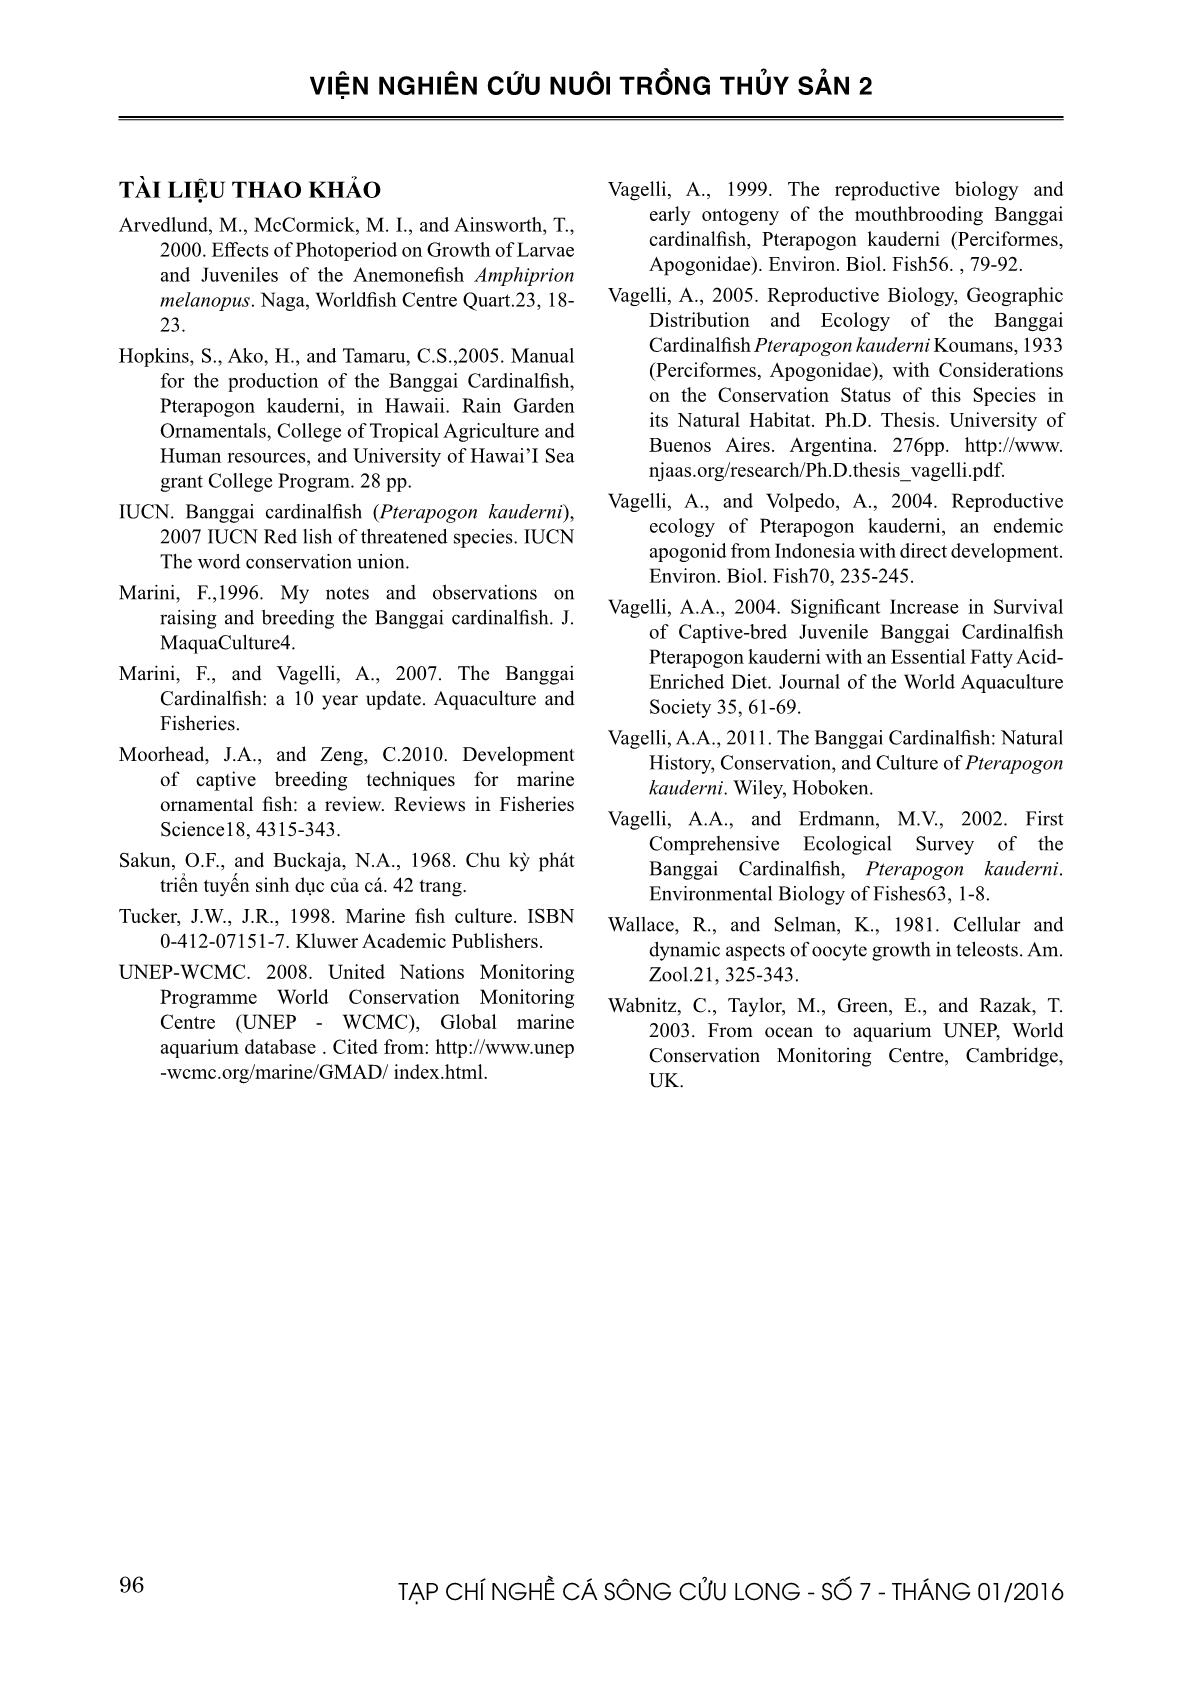 Nghiên cứu sinh sản nhân tạo cá bá chủ (Pterapogon kauderni Kaumans, 1933) tại Việt Nam trang 10